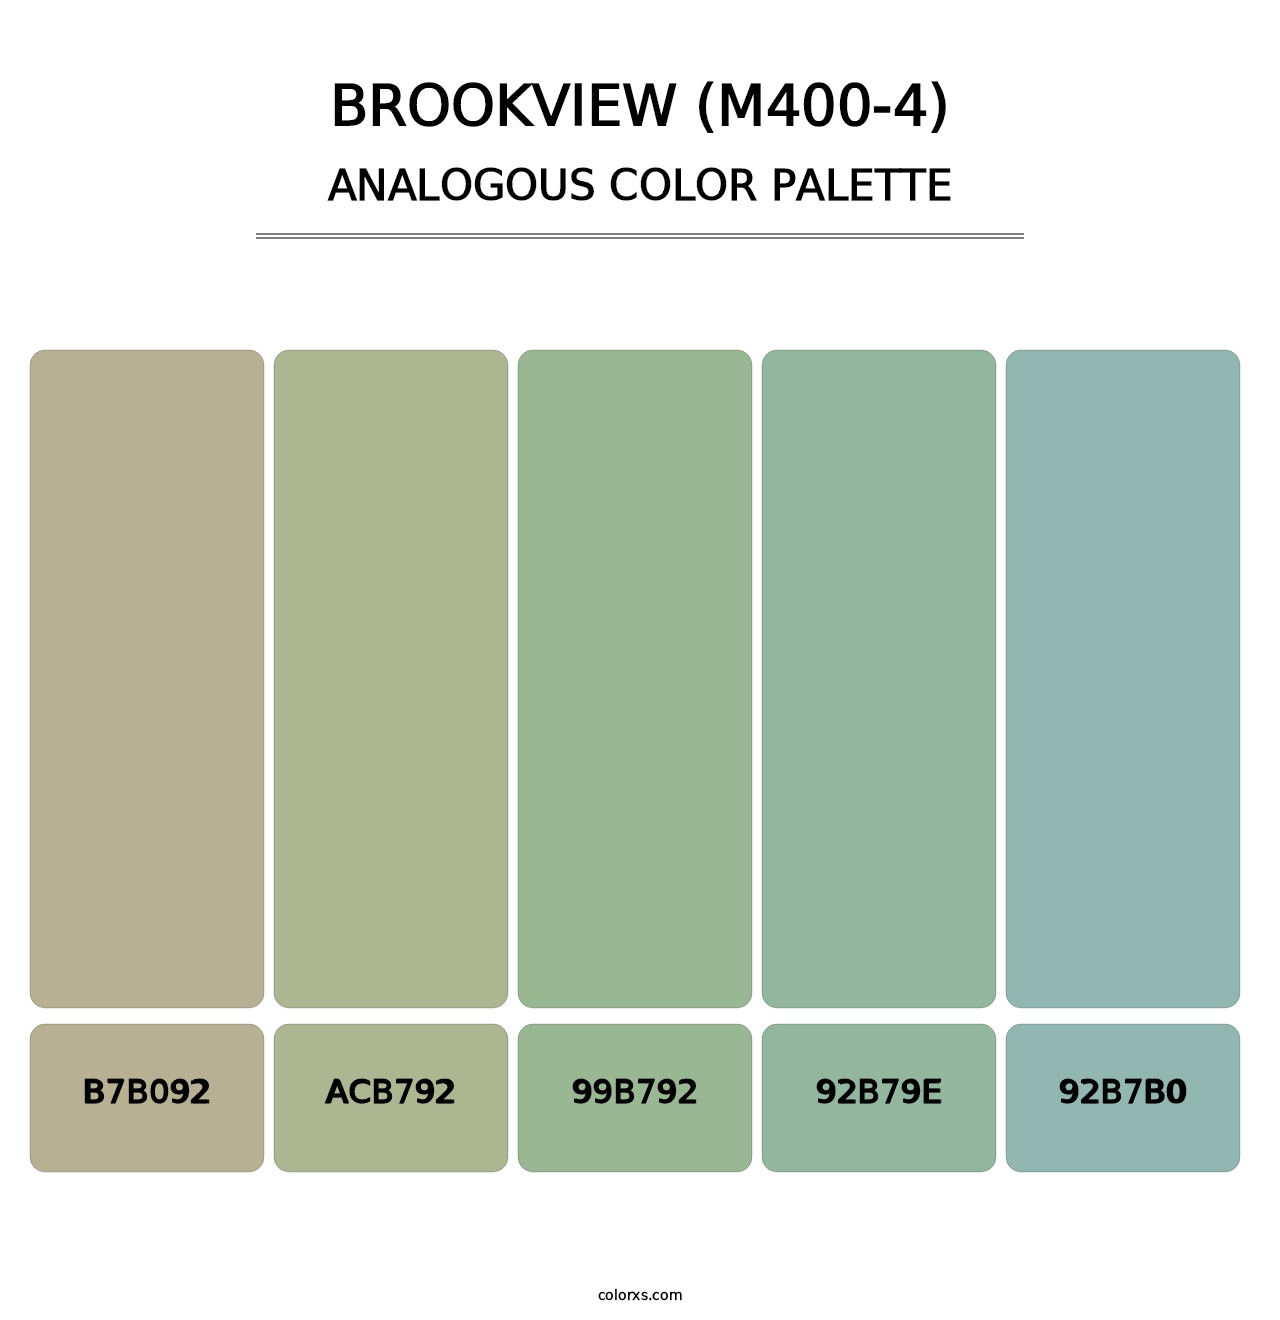 Brookview (M400-4) - Analogous Color Palette